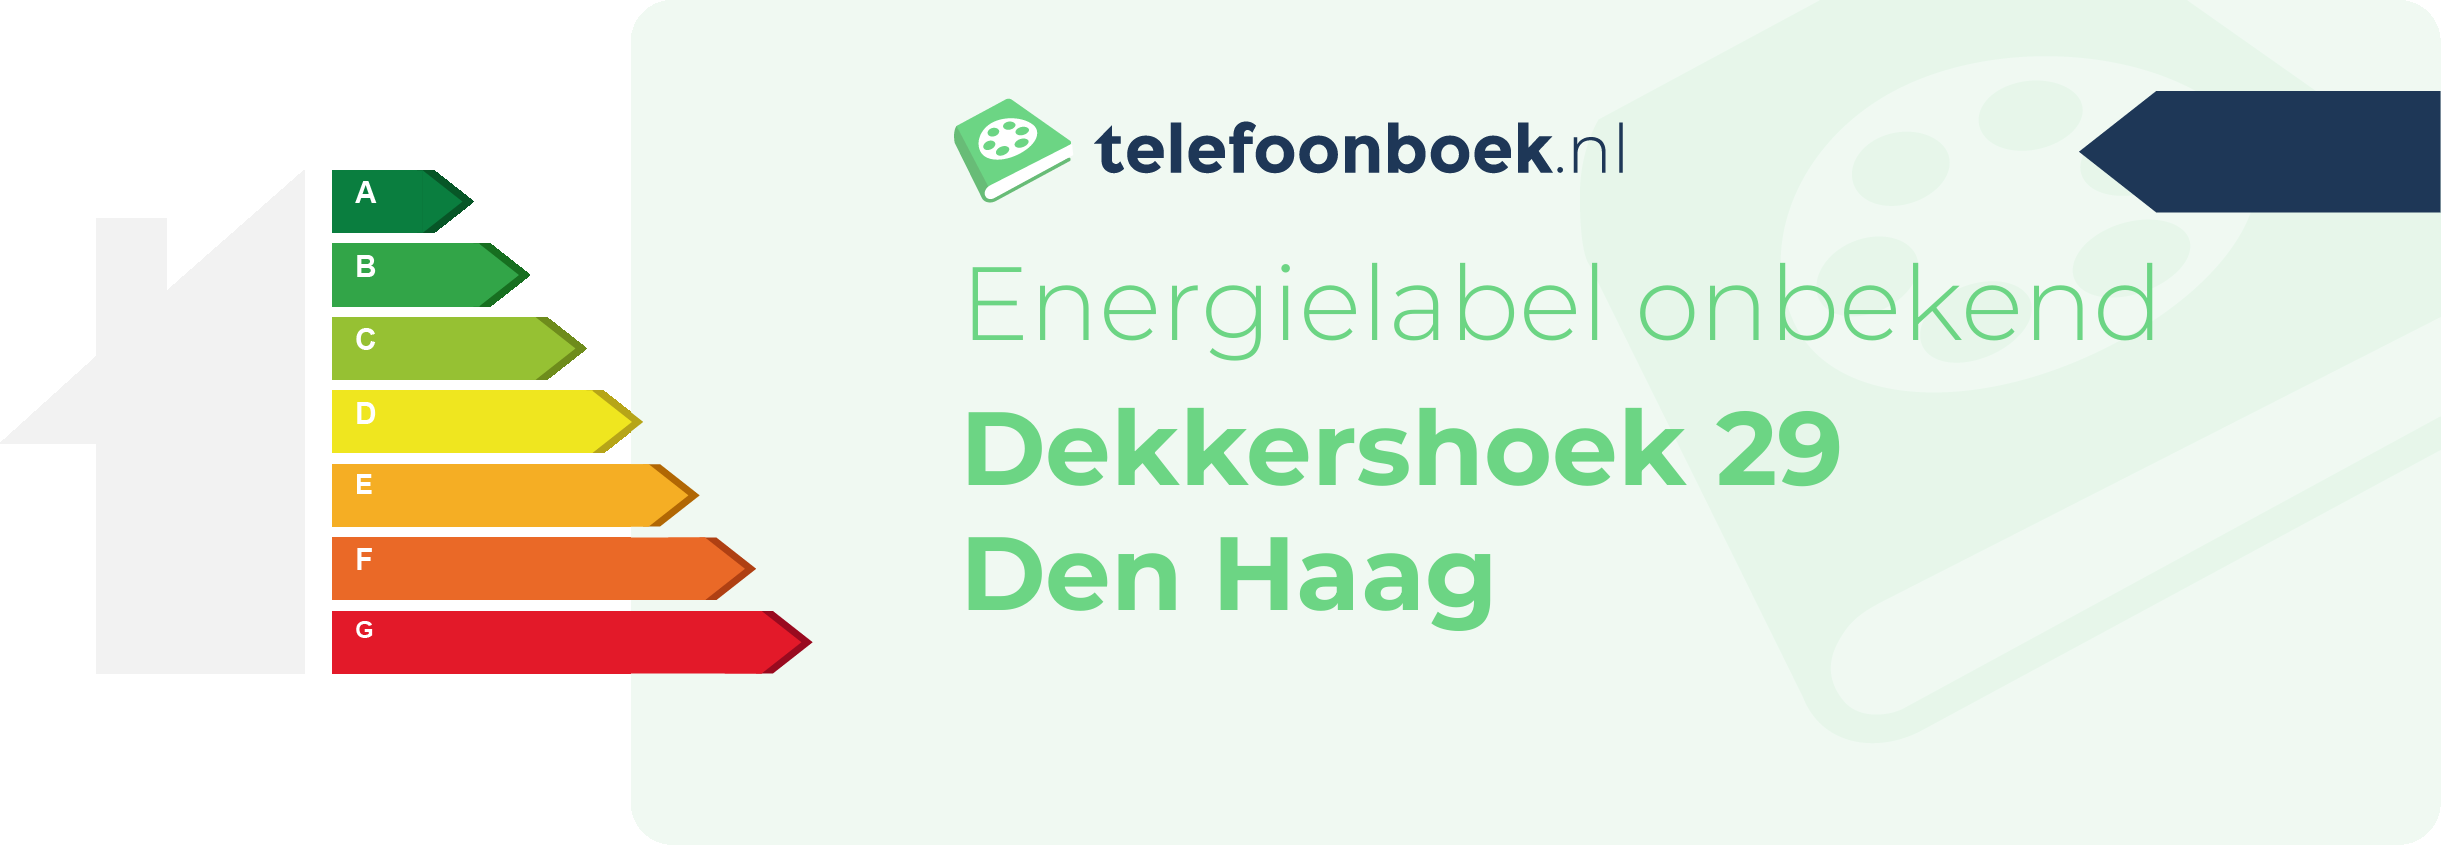 Energielabel Dekkershoek 29 Den Haag